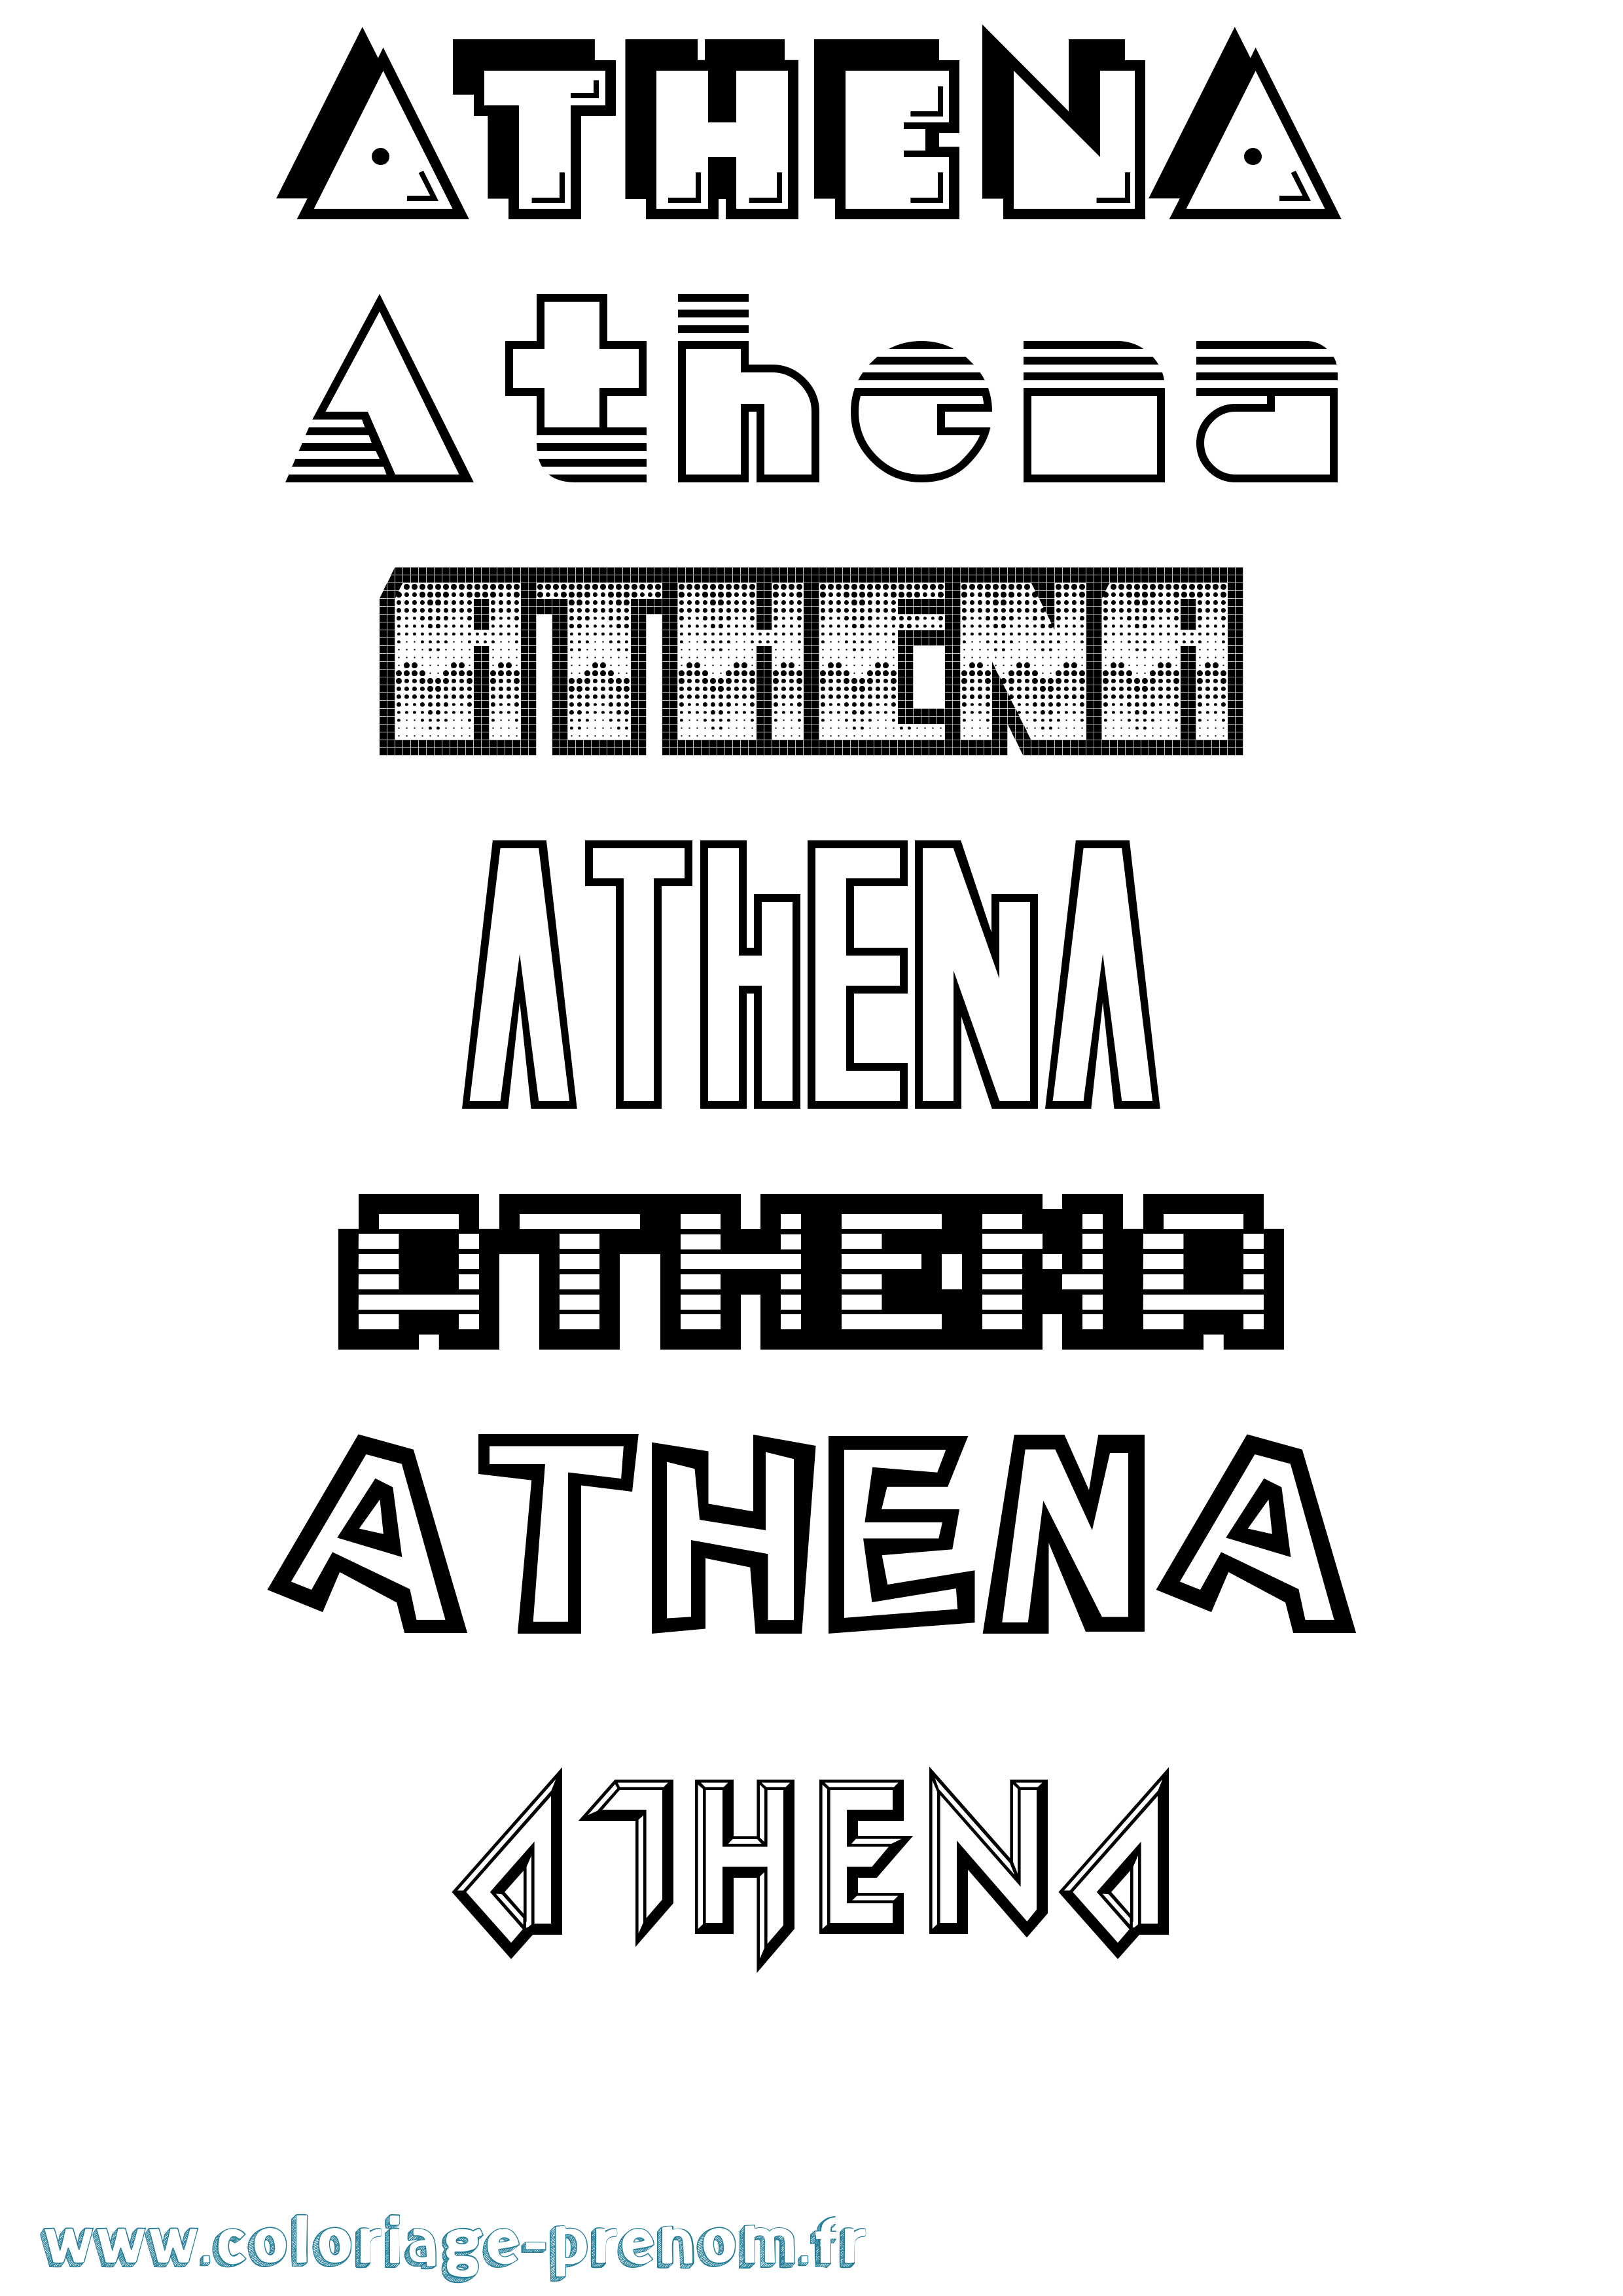 Coloriage prénom Athena